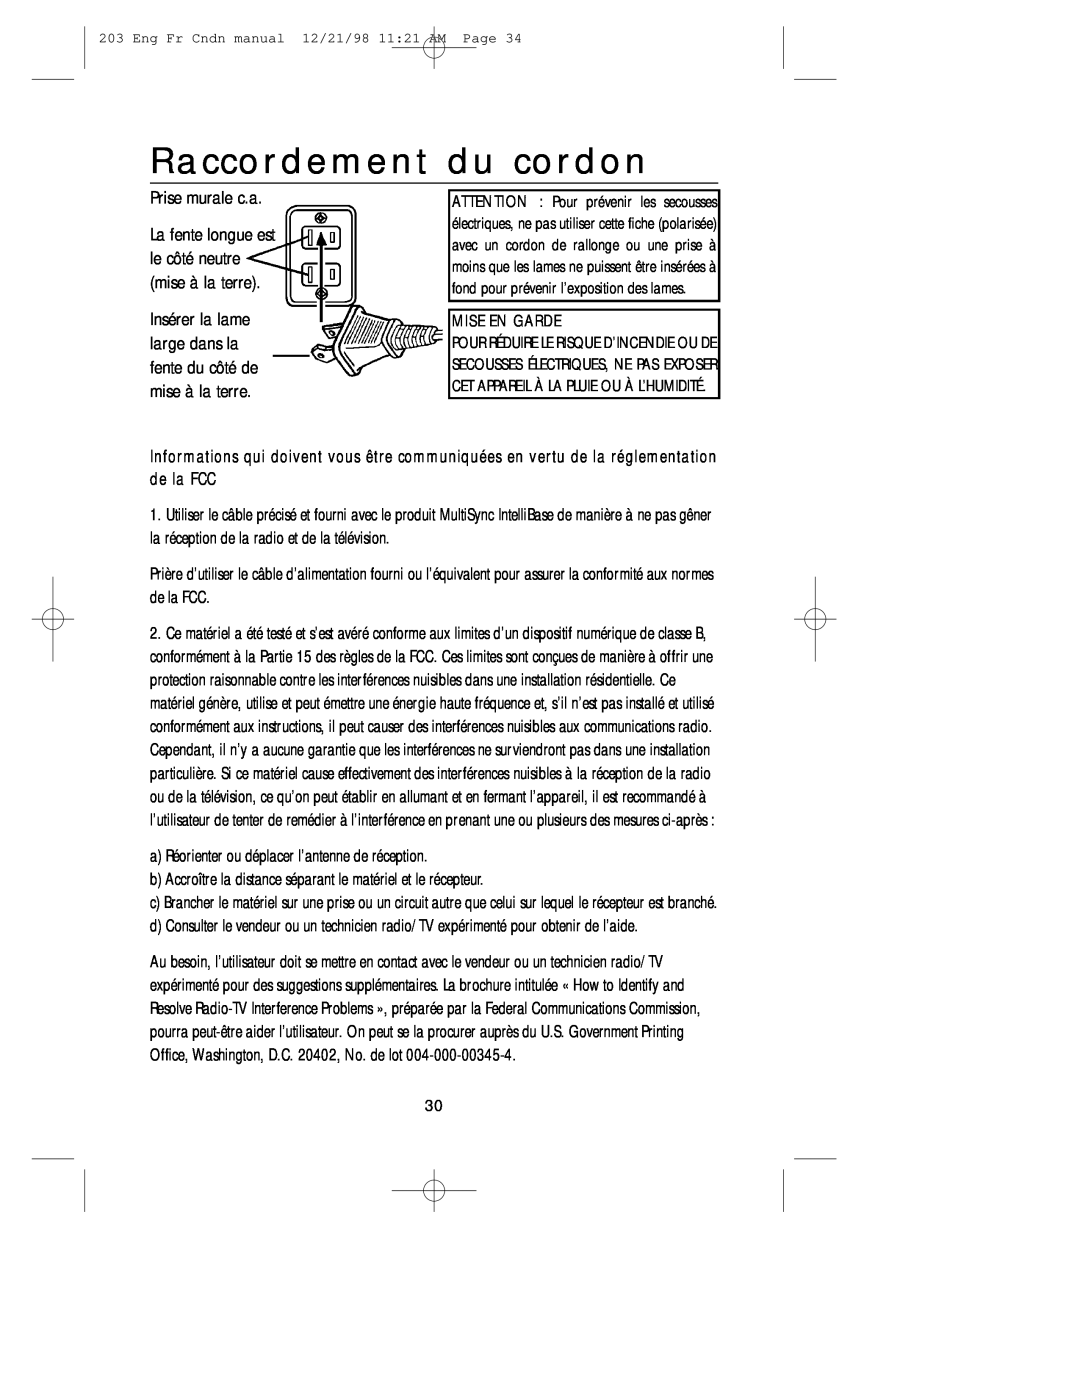 NEC USB user manual Raccordement du cordon 